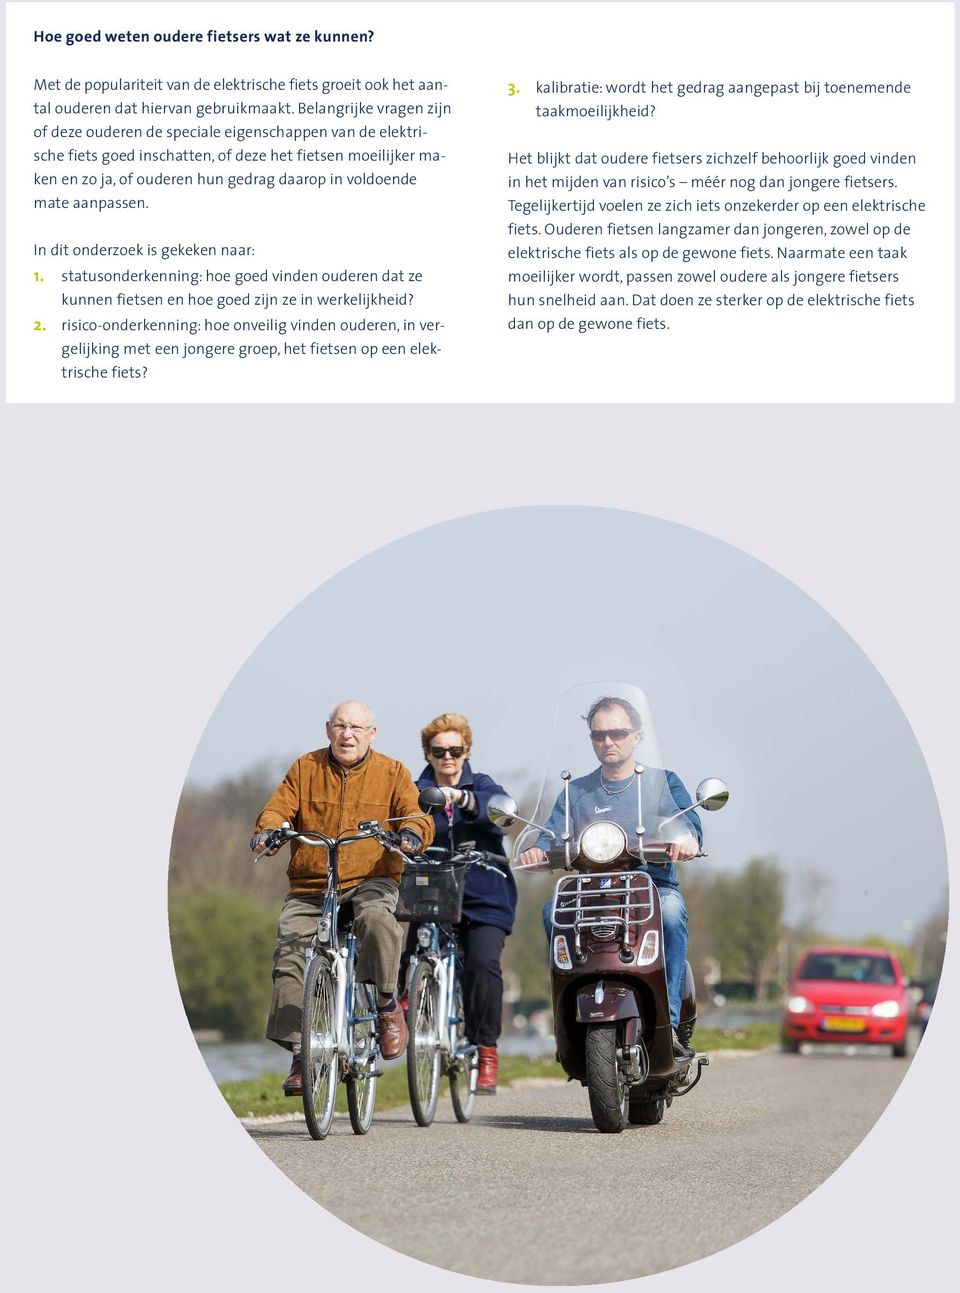 mate aanpassen. In dit onderzoek is gekeken naar: 1. statusonderkenning: hoe goed vinden ouderen dat ze kunnen fietsen en hoe goed zijn ze in werkelijkheid? 2.